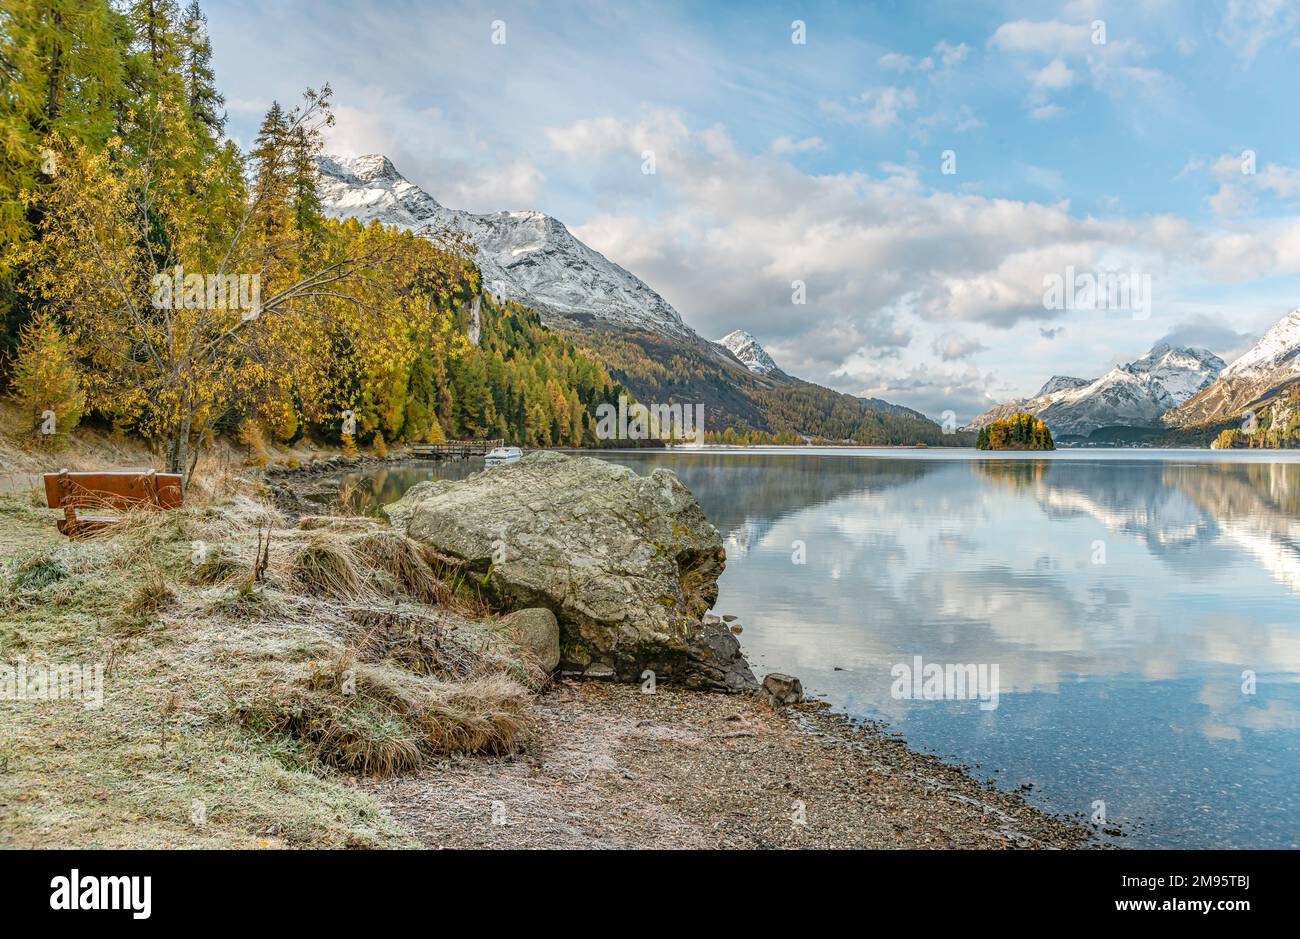 Banco del parque en un paisaje de otoño en el lago Sils, Engadine, Suiza con Piz Margna en el fondo Foto de stock